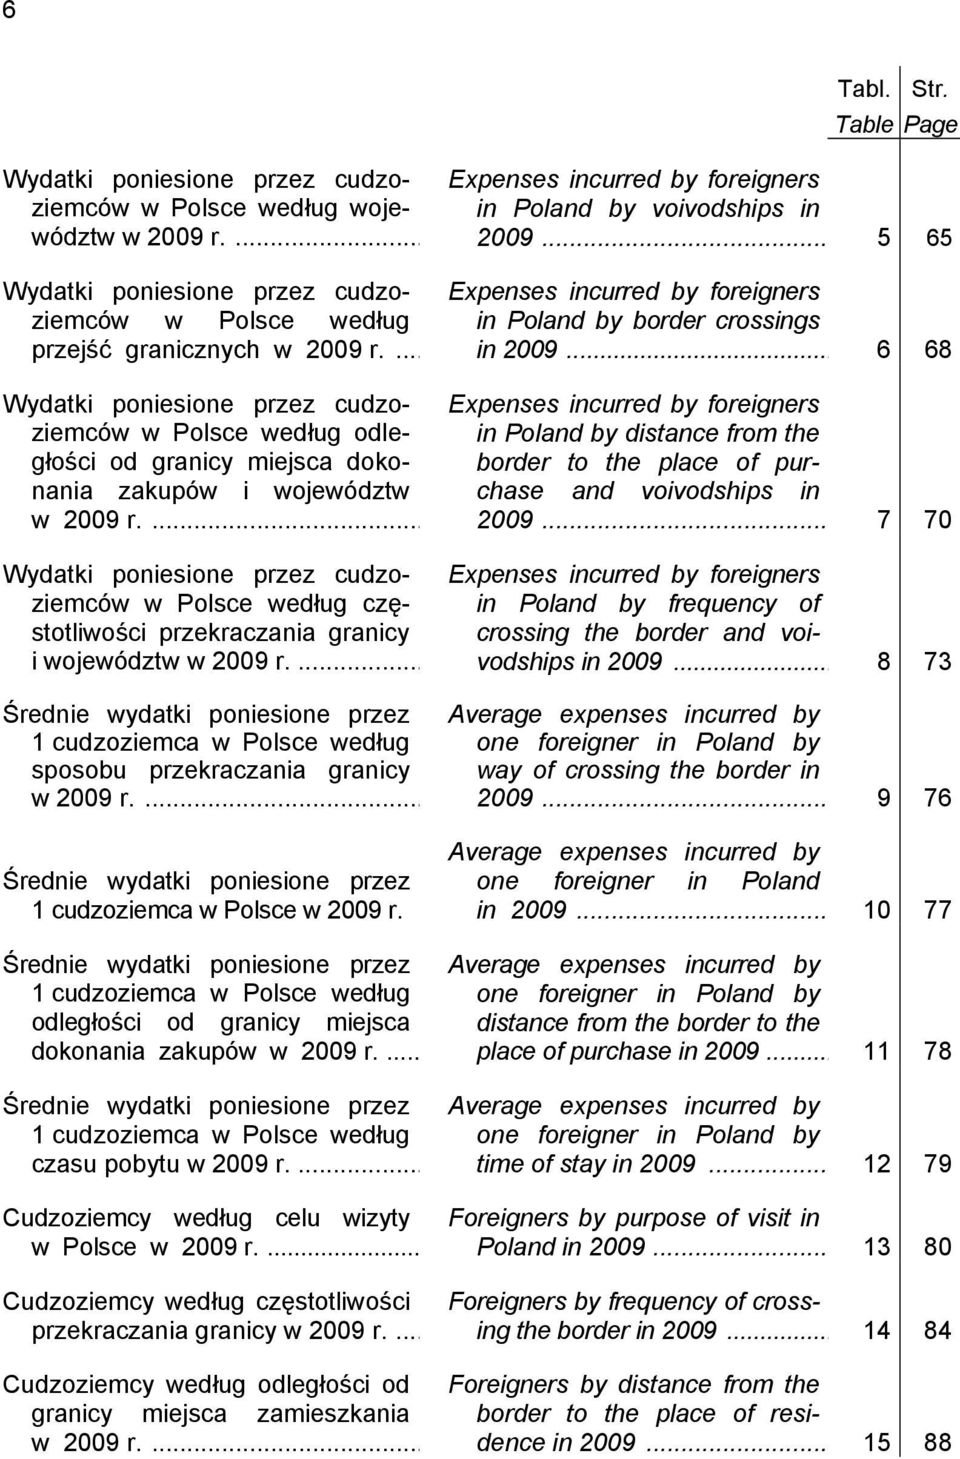 ... Wydatki poniesione przez cudzoziemców w Polsce według częstotliwości przekraczania granicy i województw w 2009 r.